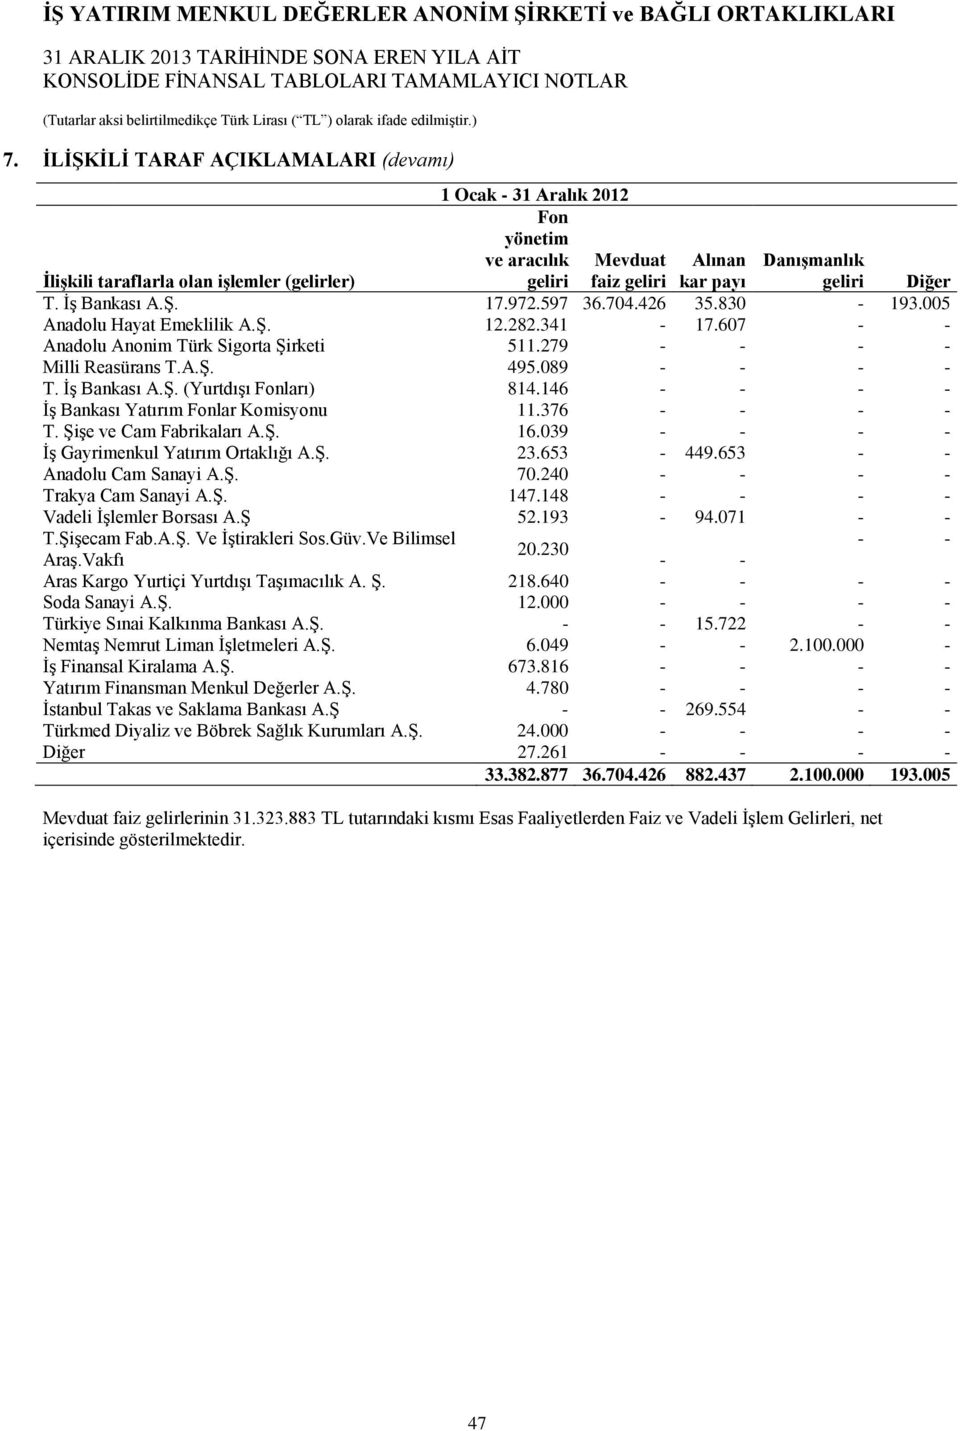 146 - - - - İş Bankası Yatırım Fonlar Komisyonu 11.376 - - - - T. Şişe ve Cam Fabrikaları A.Ş. 16.039 - - - - İş Gayrimenkul Yatırım Ortaklığı A.Ş. 23.653-449.653 - - Anadolu Cam Sanayi A.Ş. 70.